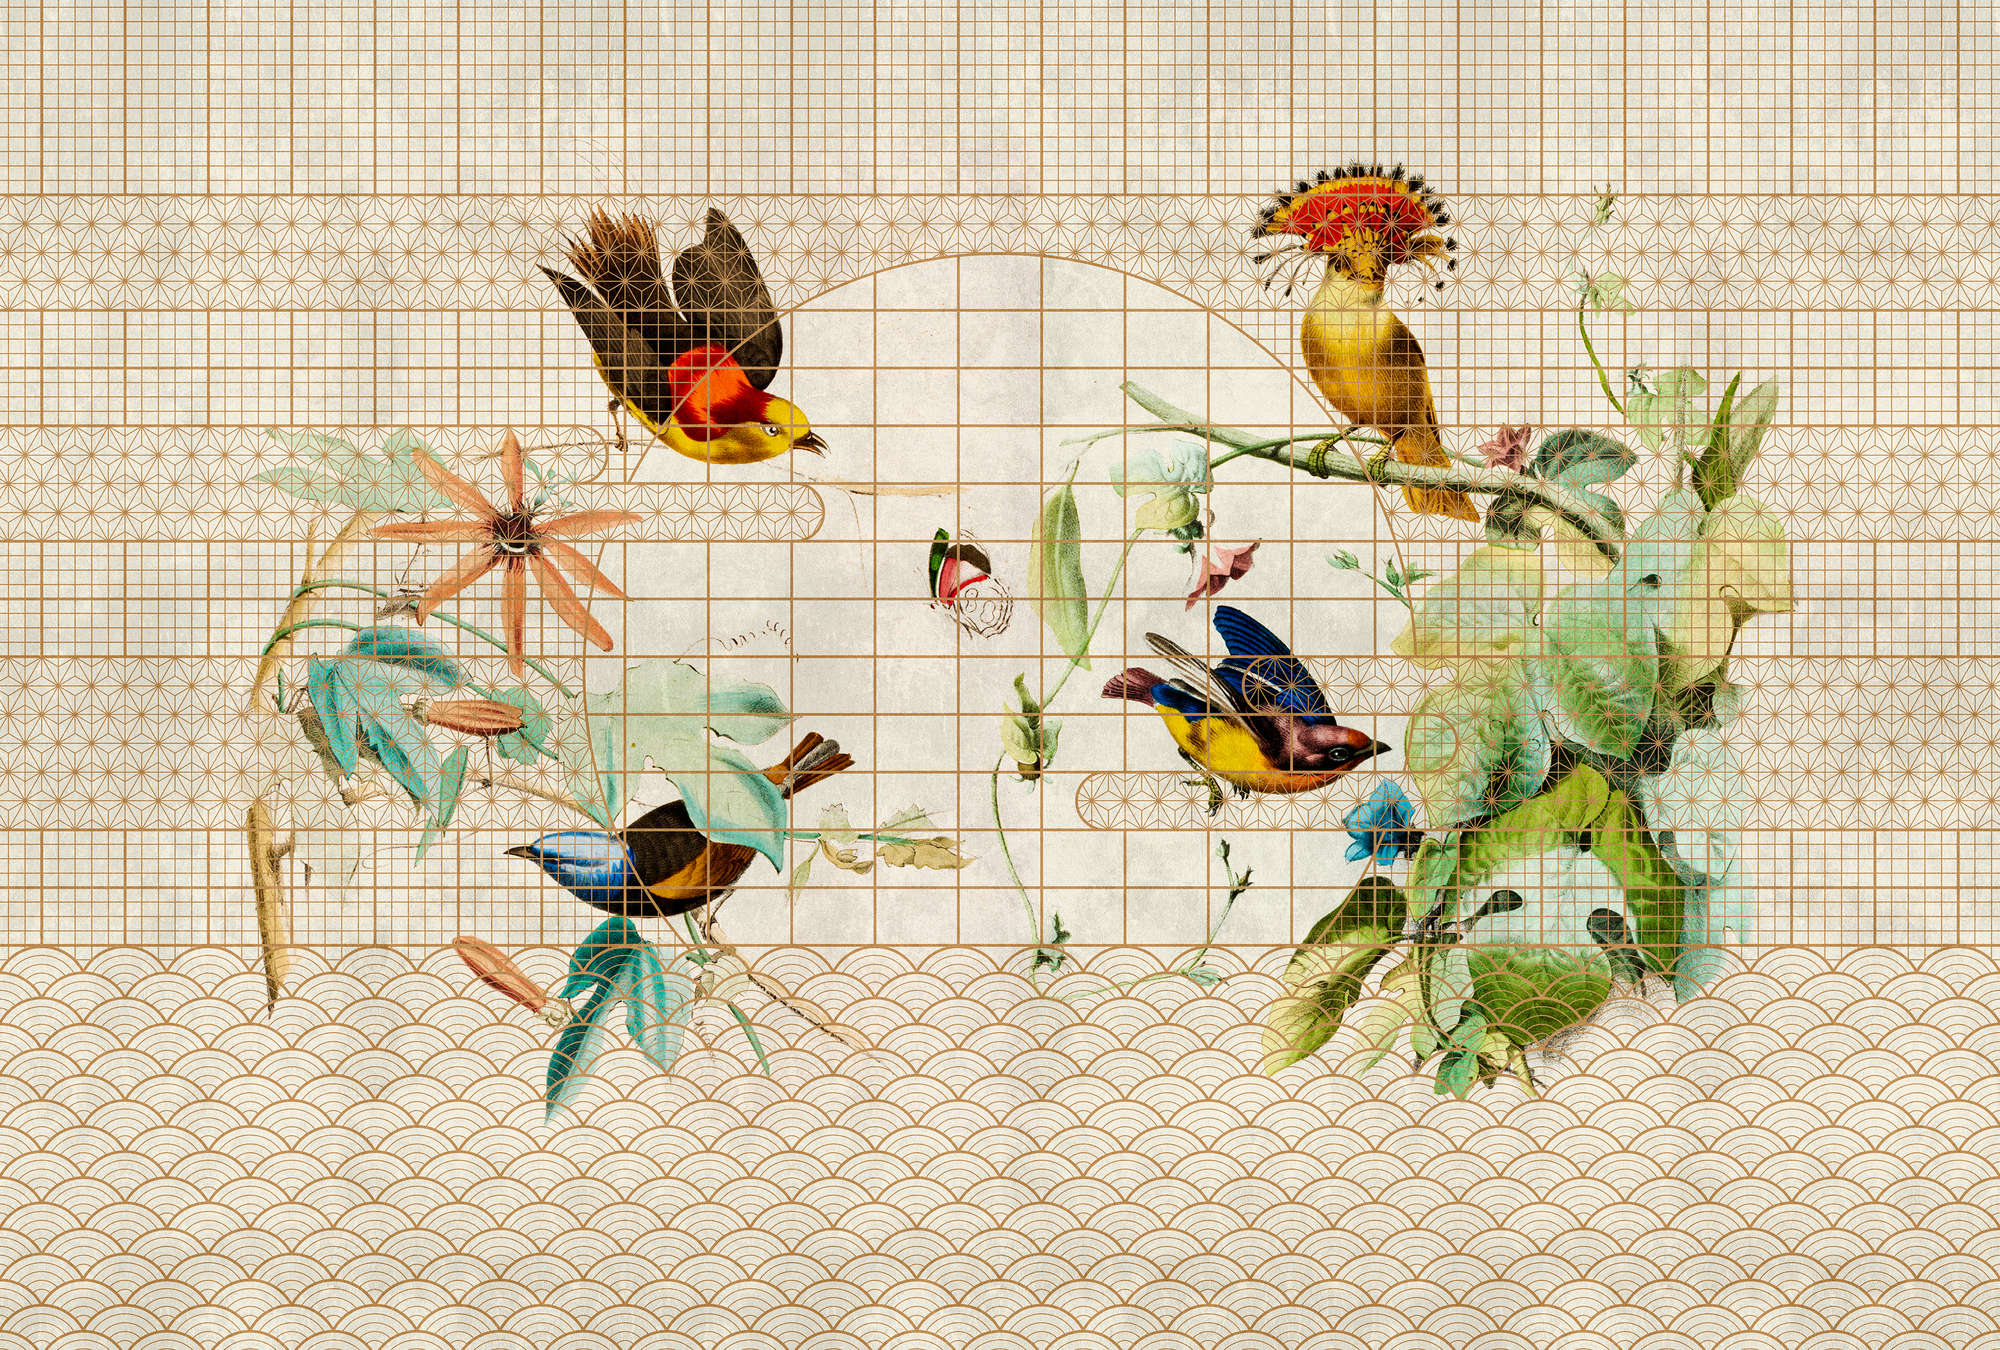             Pajarera 1 - Mural de aves y mariposas en pajarera dorada
        